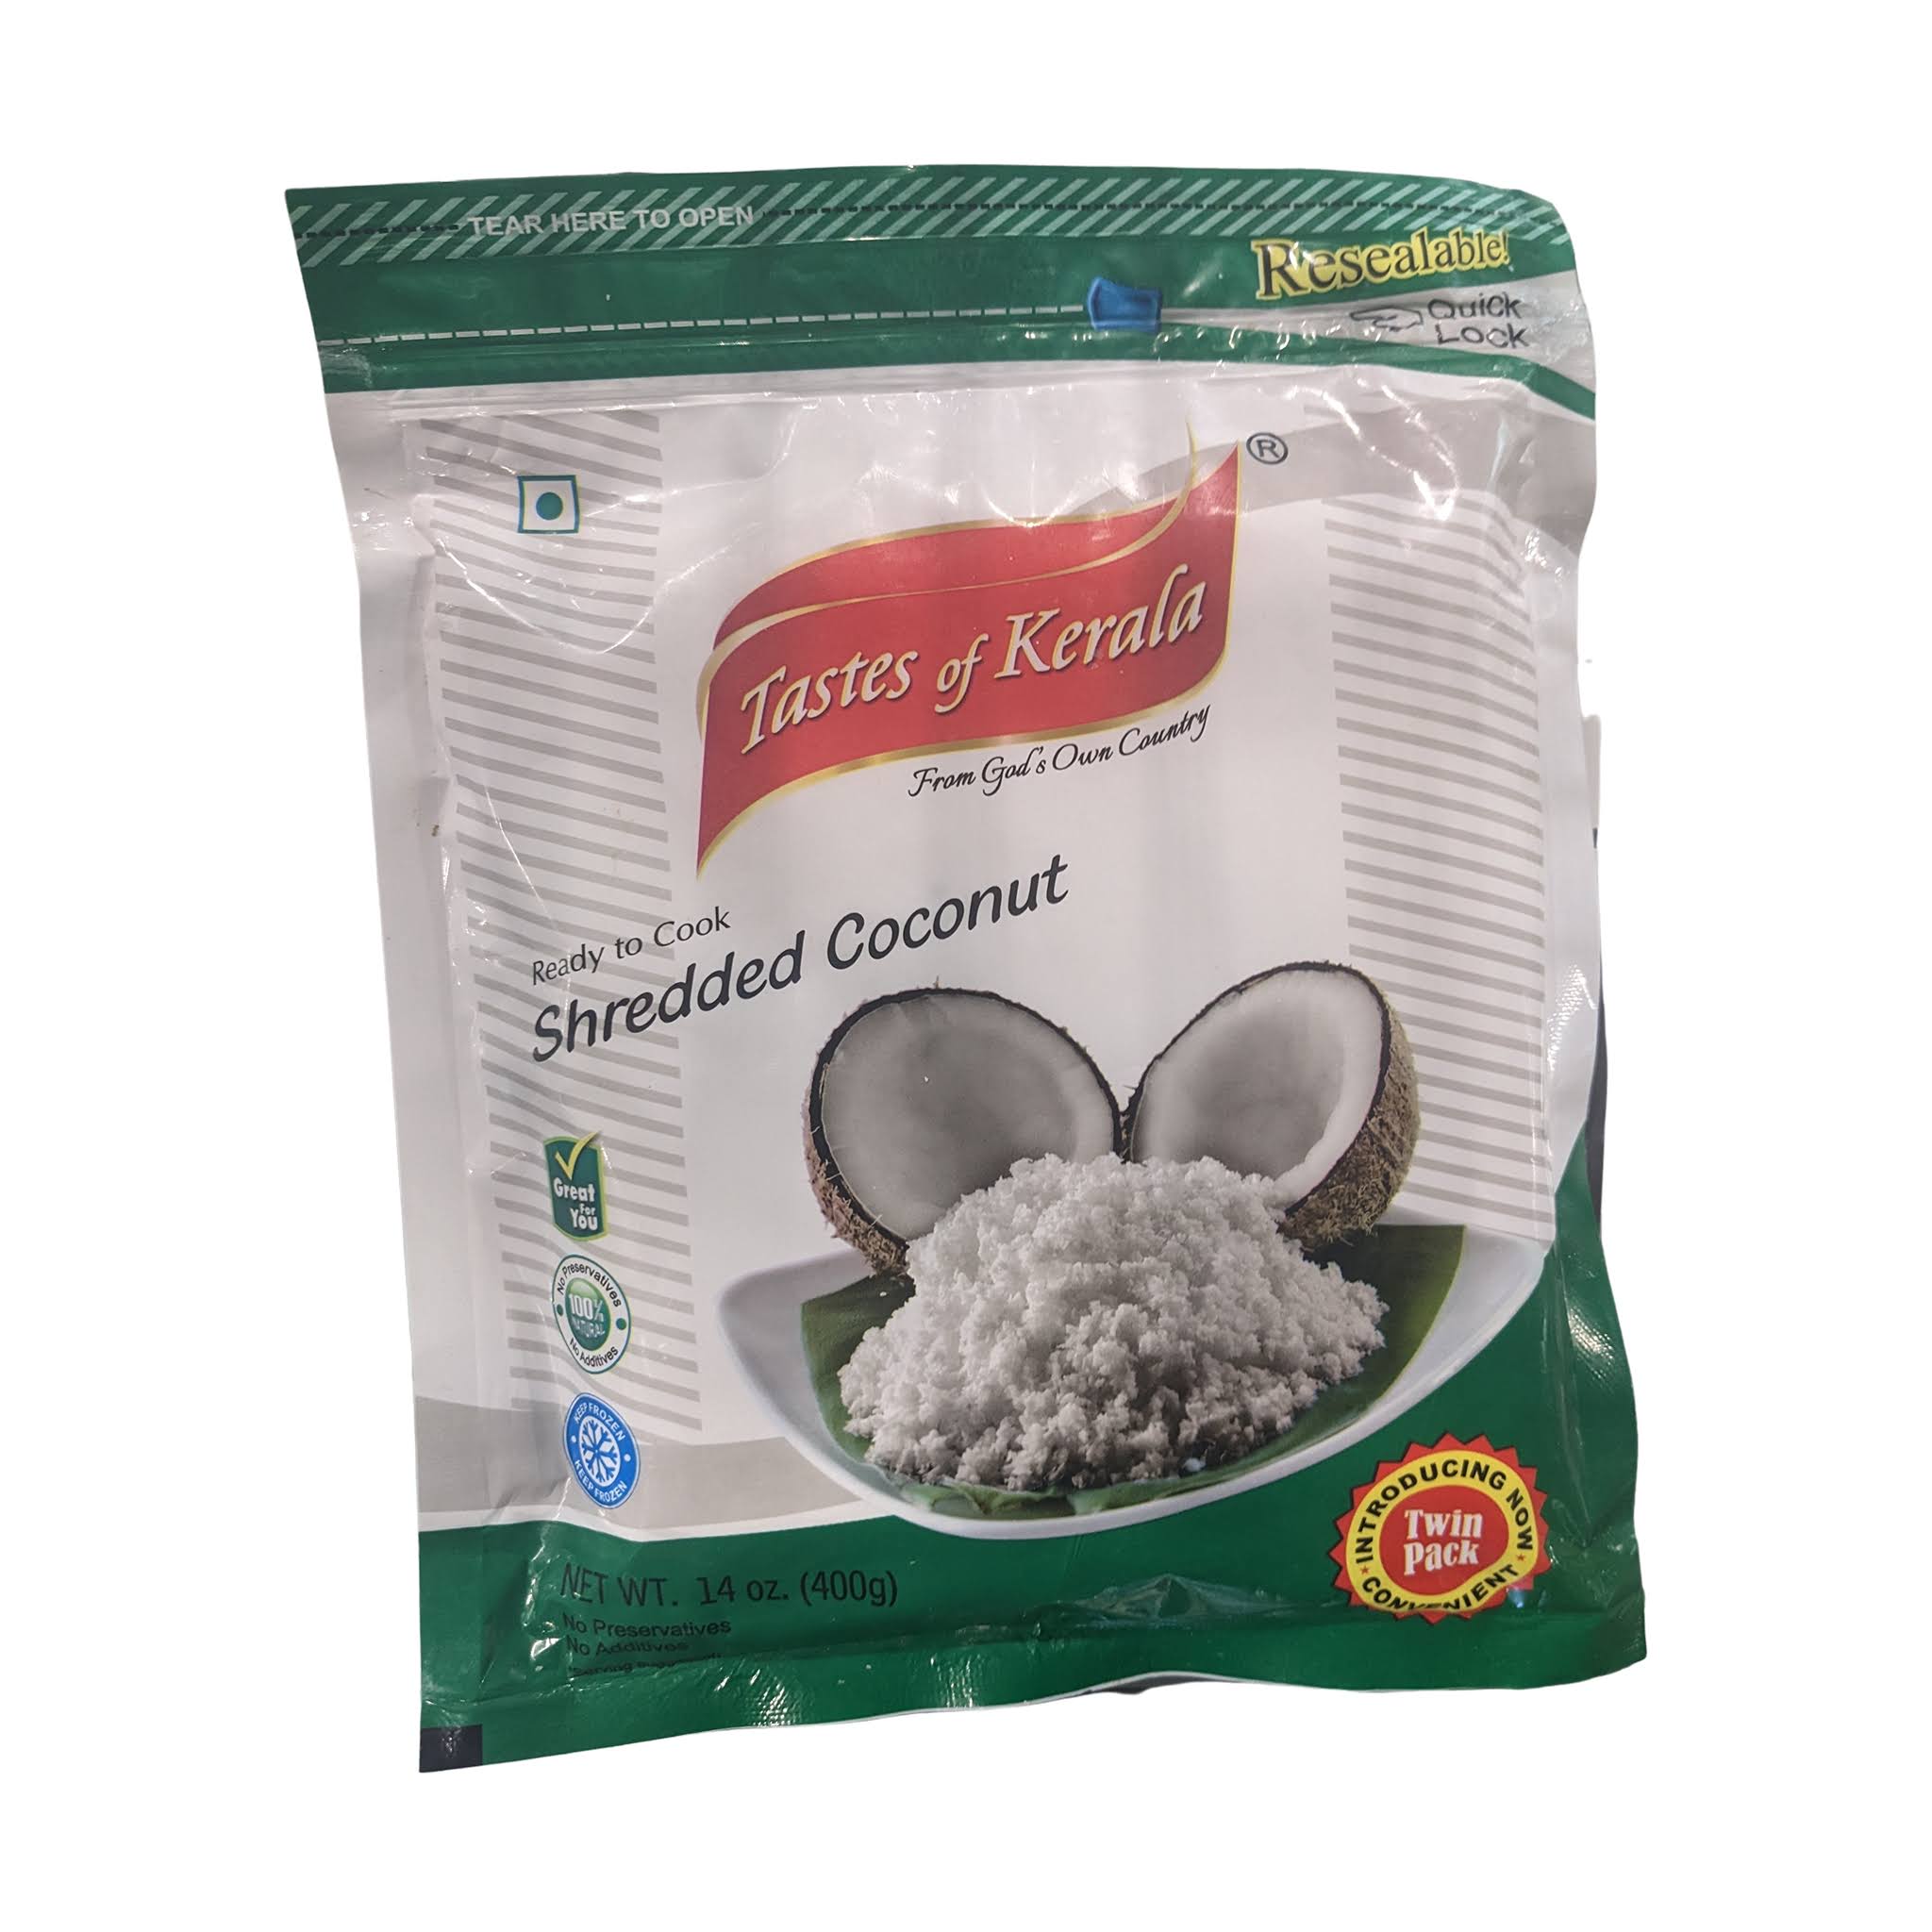 Taste of Kerala Shredded Coconut - 14 oz